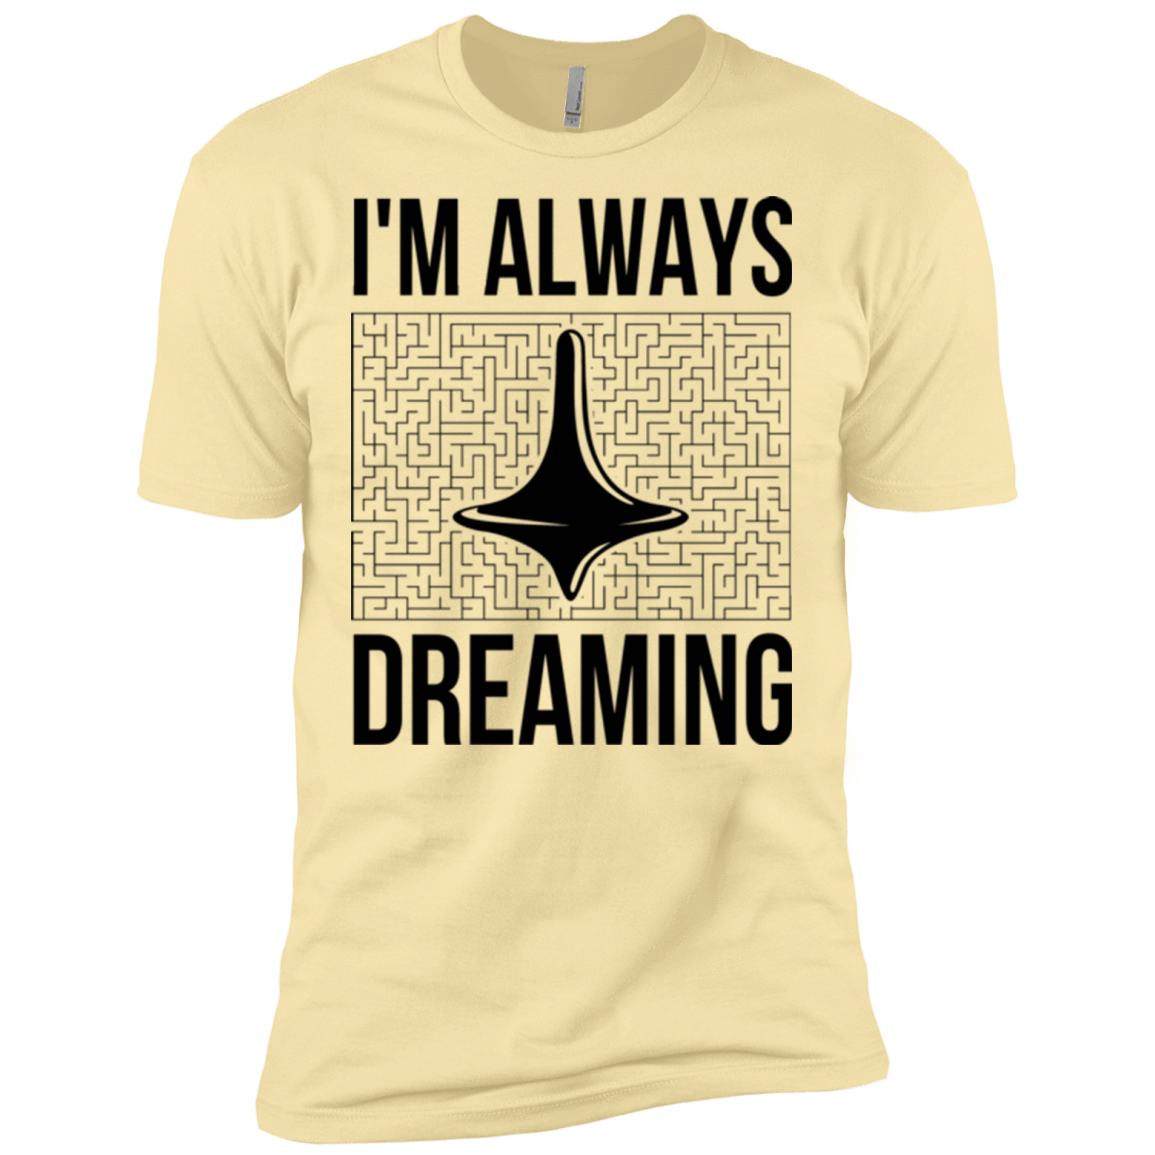 T-Shirts Banana Cream / X-Small Always dreaming Men's Premium T-Shirt